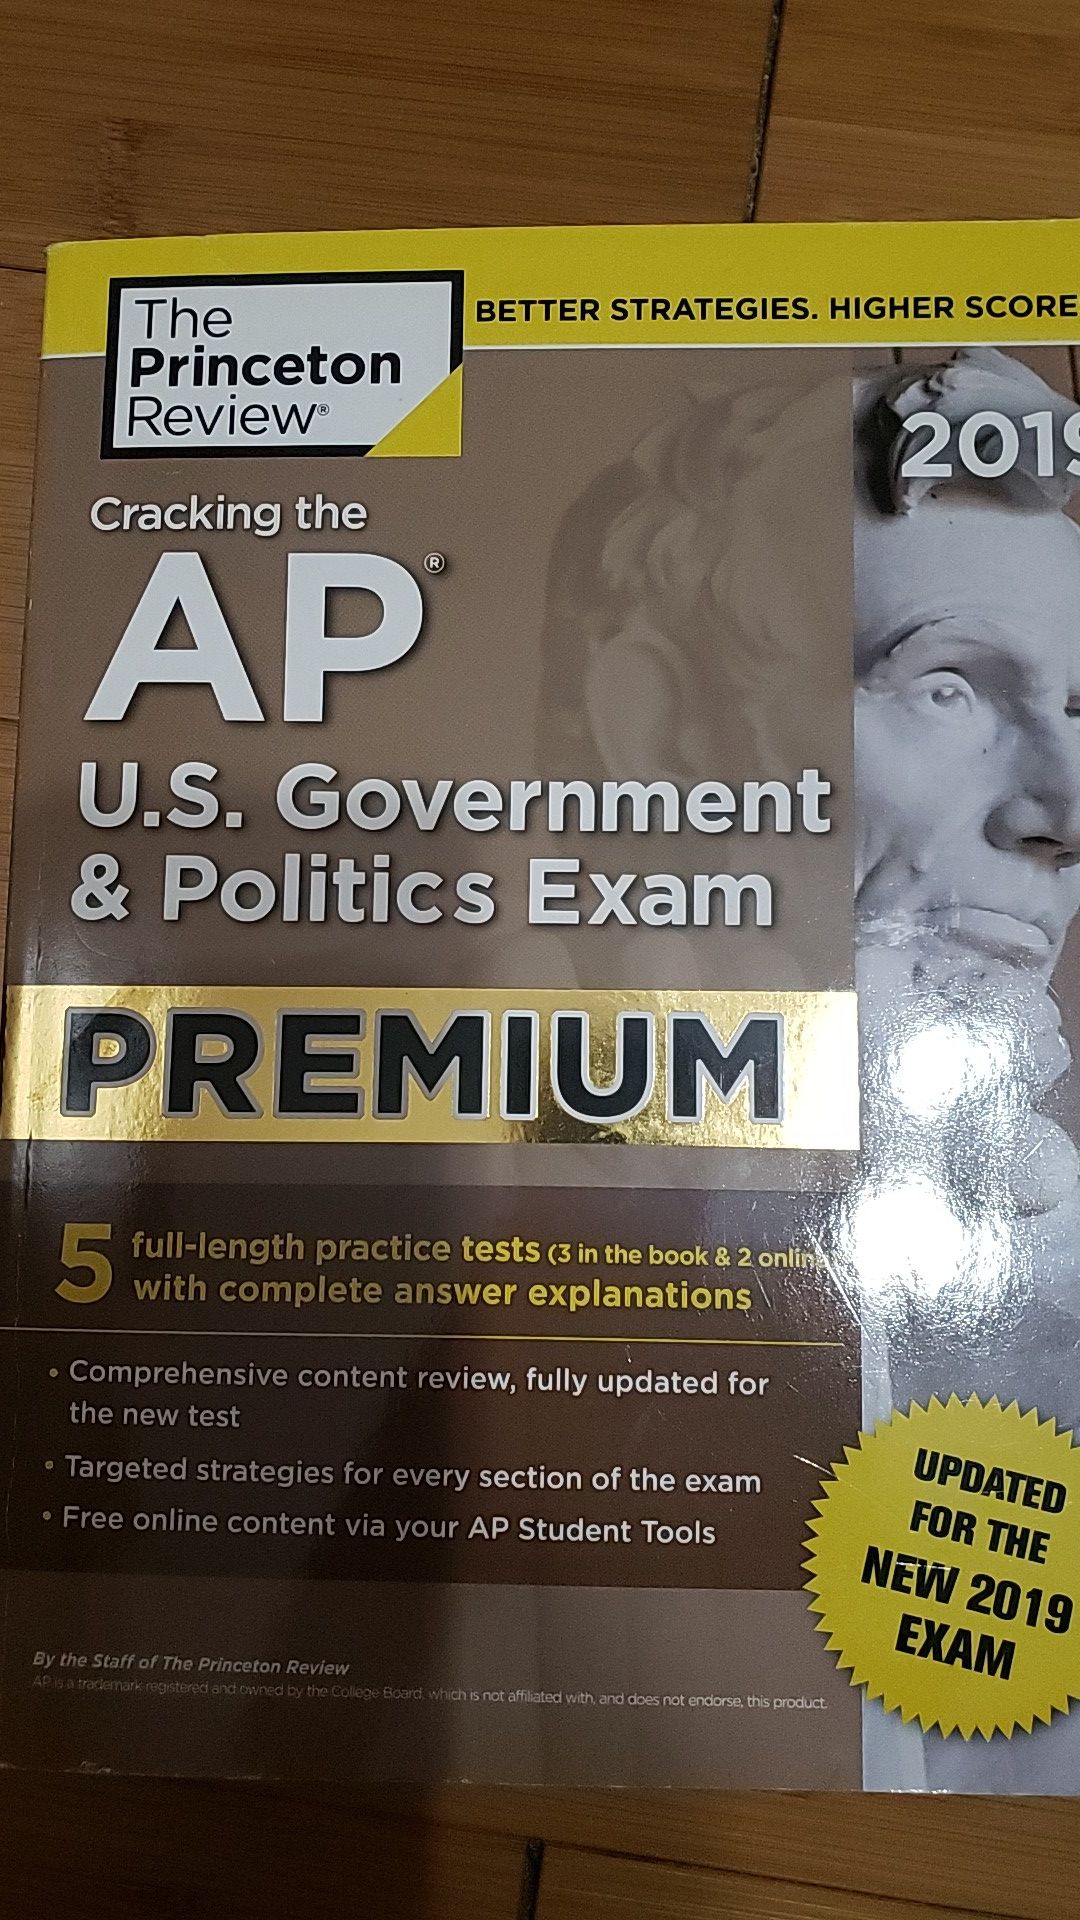 Cracking the AP U.S. Government & Politics Exam Premium